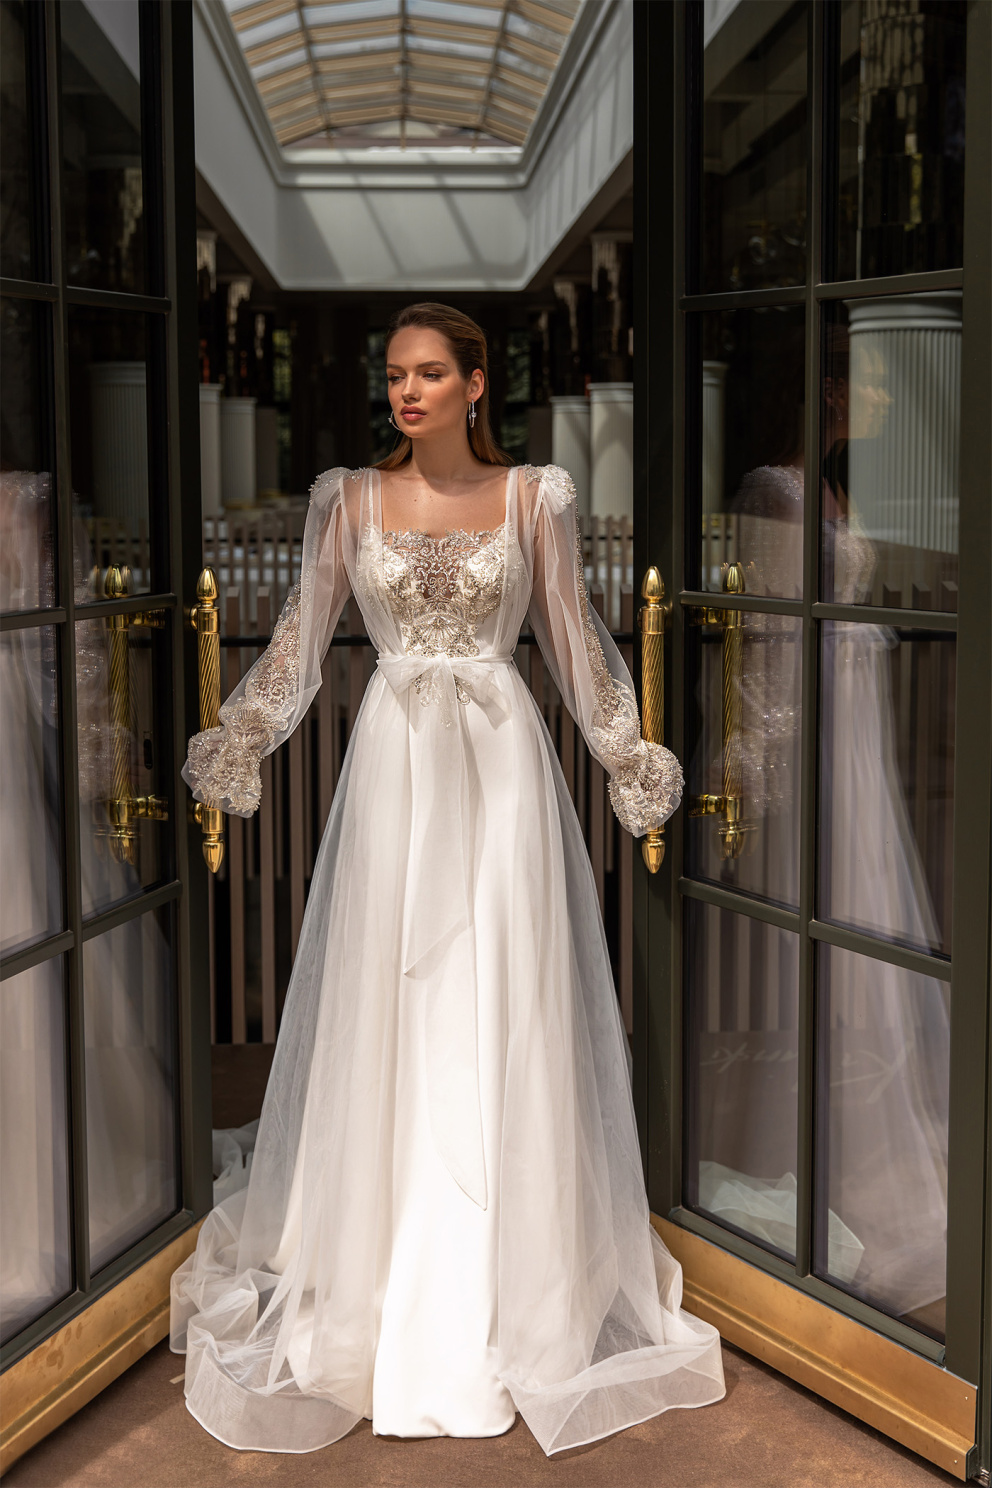 Šaty s impozantní výšivkou ve vintage stylu se velmi hodí pro zámeckou svatbu. Budete se v nich cítit jako princezna.
